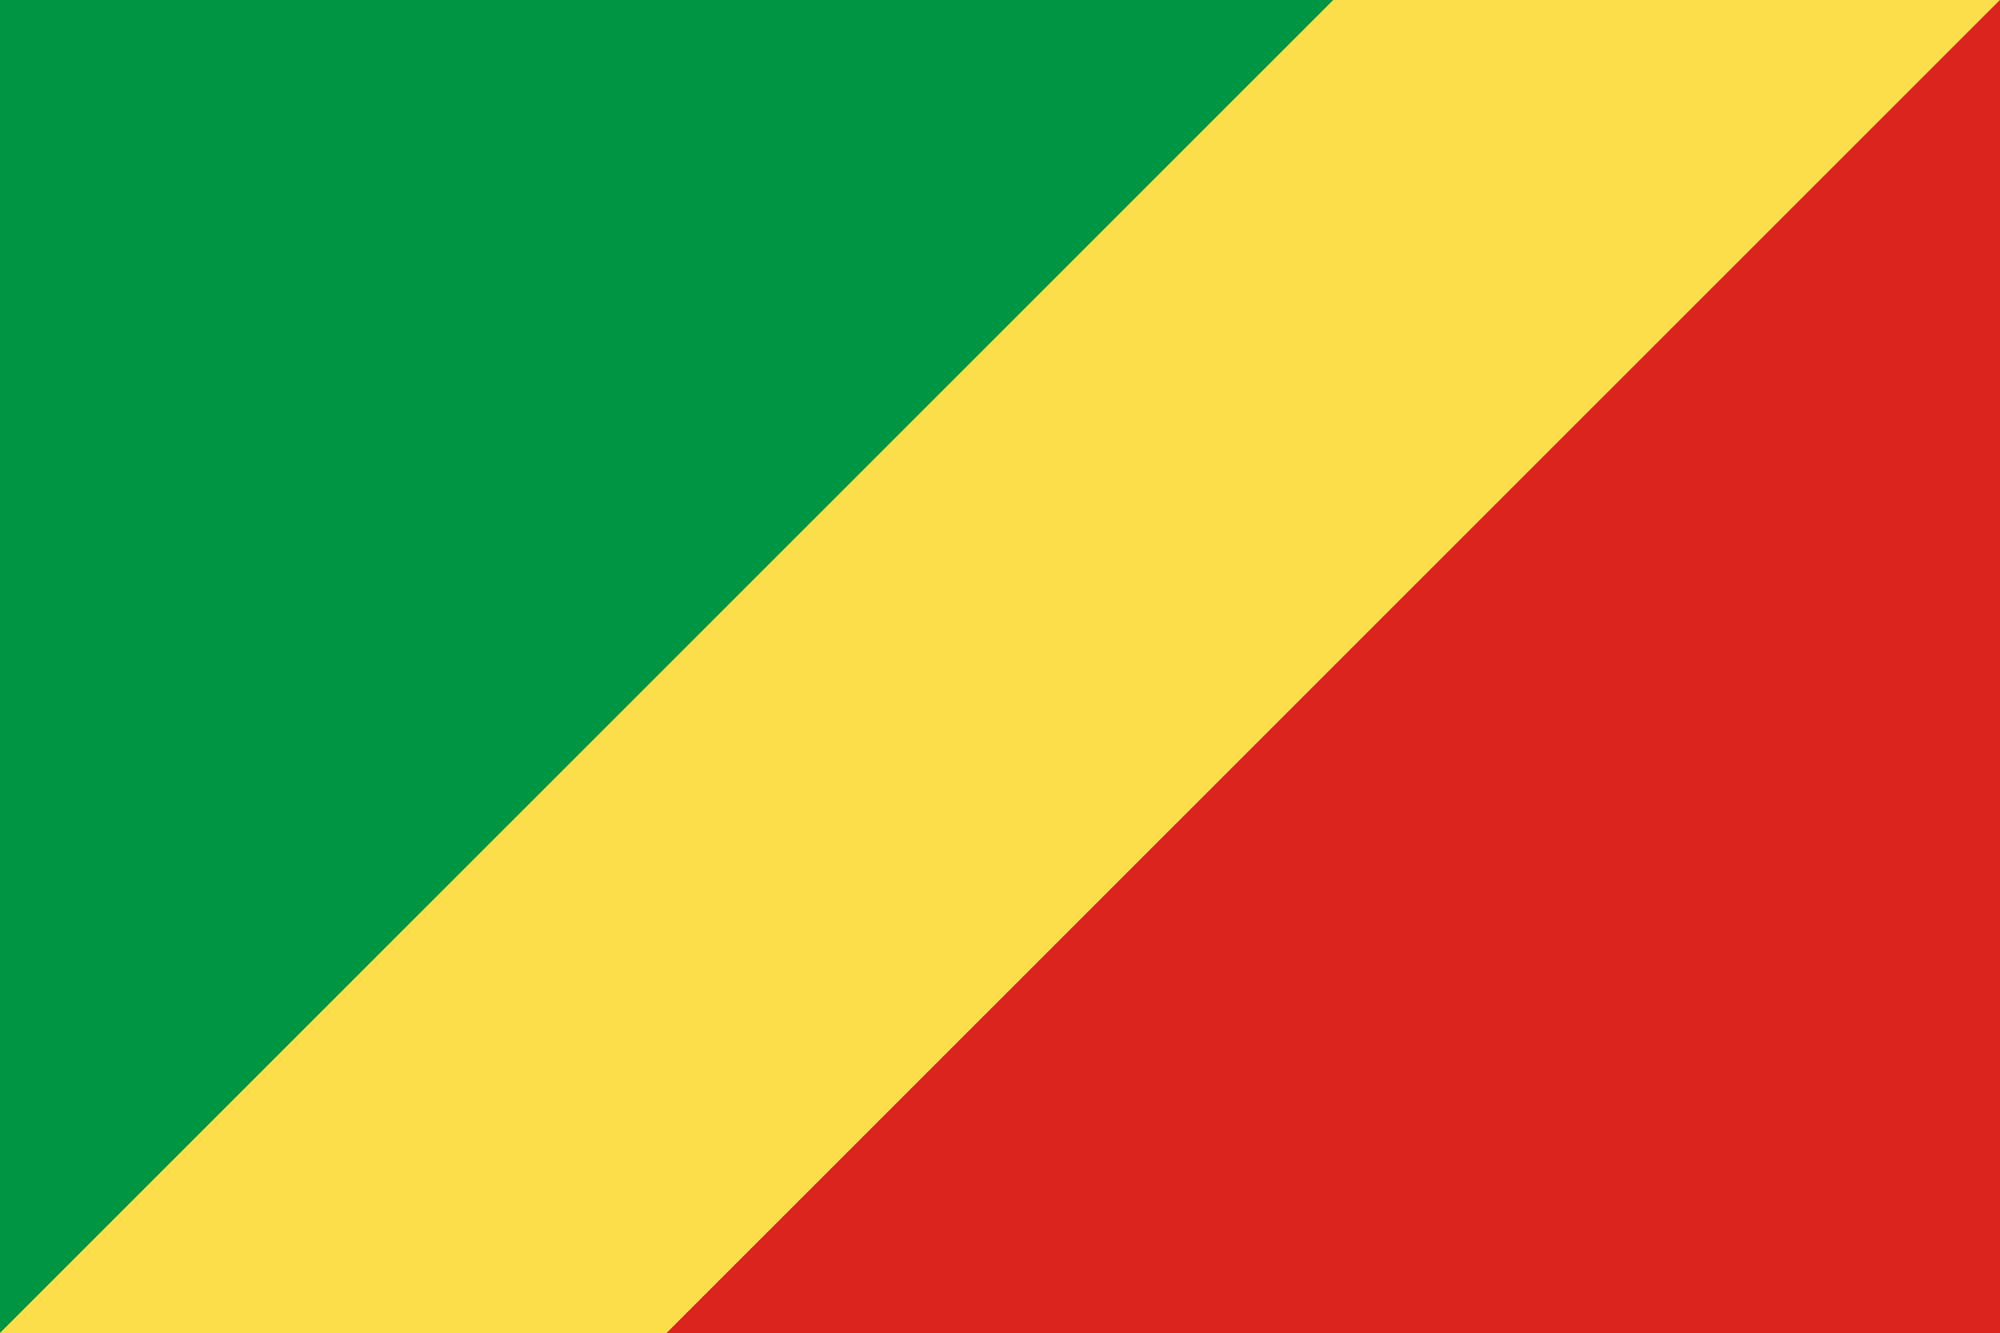 La República del Congo eleva a 112 el número de Partes en el Convenio de Minamata